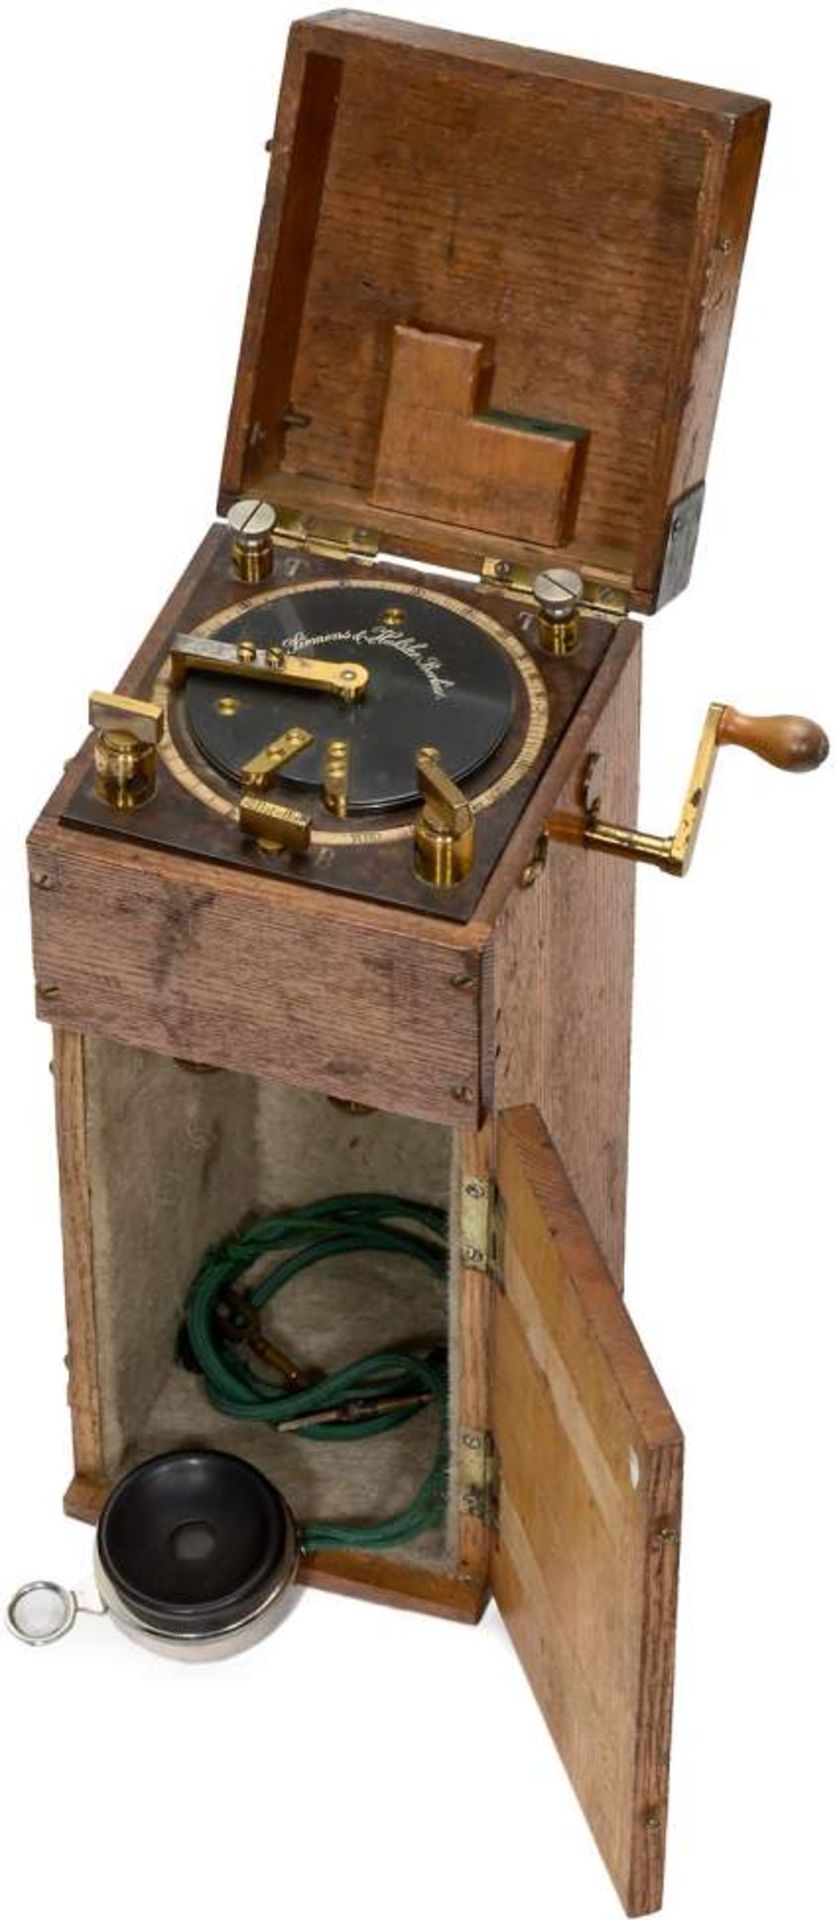 Siemens & Halske Earthing Bridge Meter, c. 1890
Early German Post measuring instrument, no. 5739,